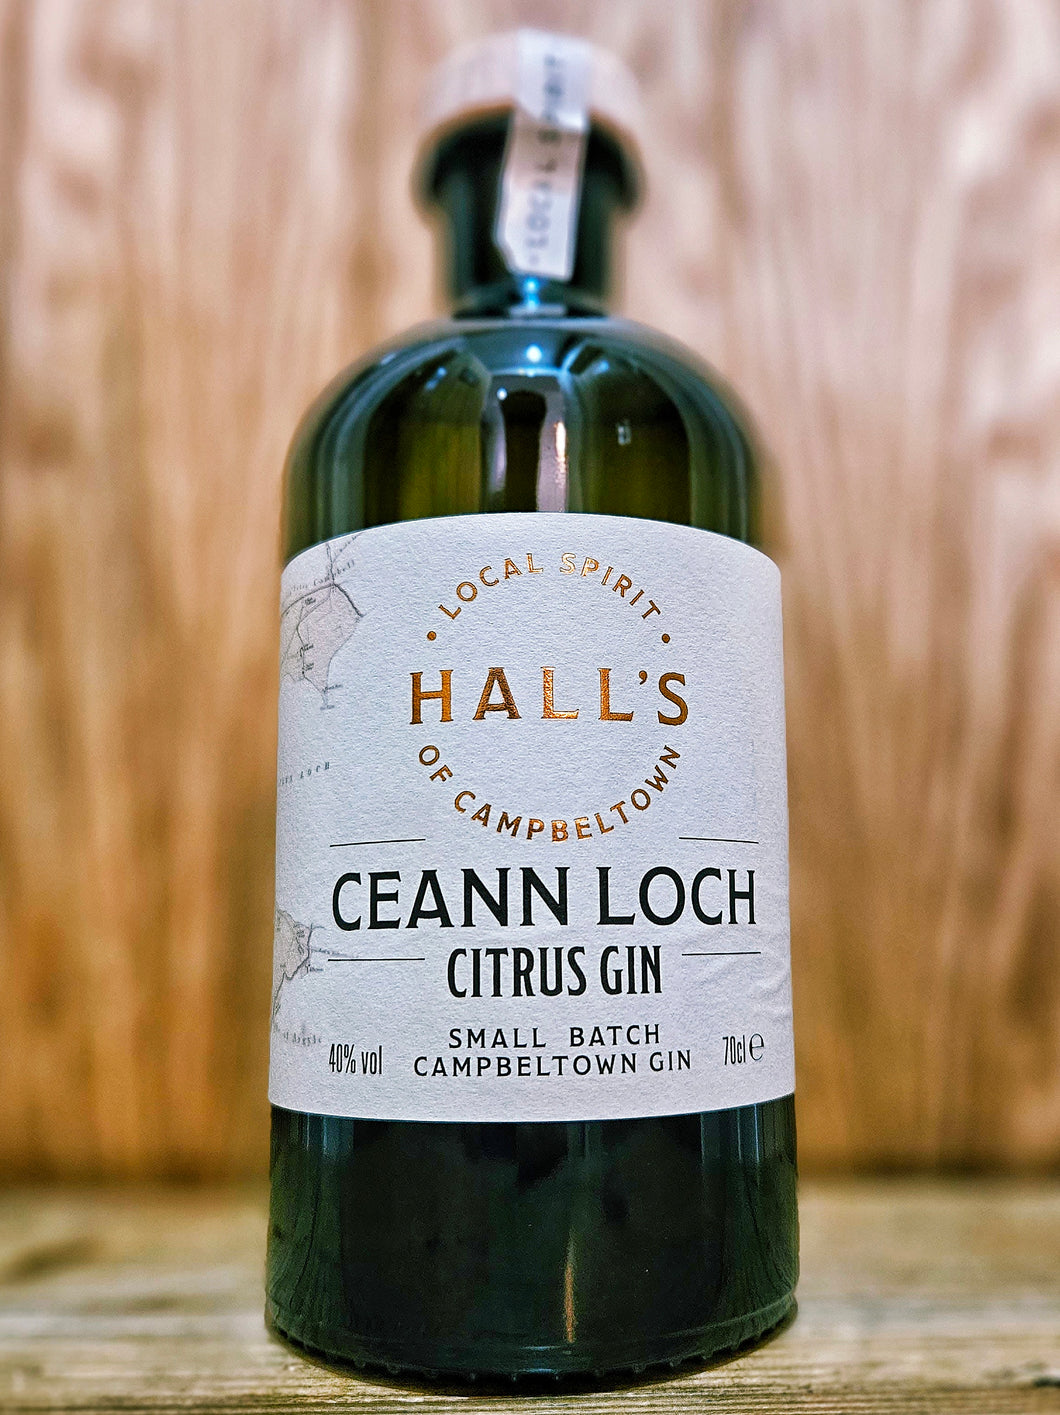 Beinn An Tuirc - Ceann Loch Citrus Gin